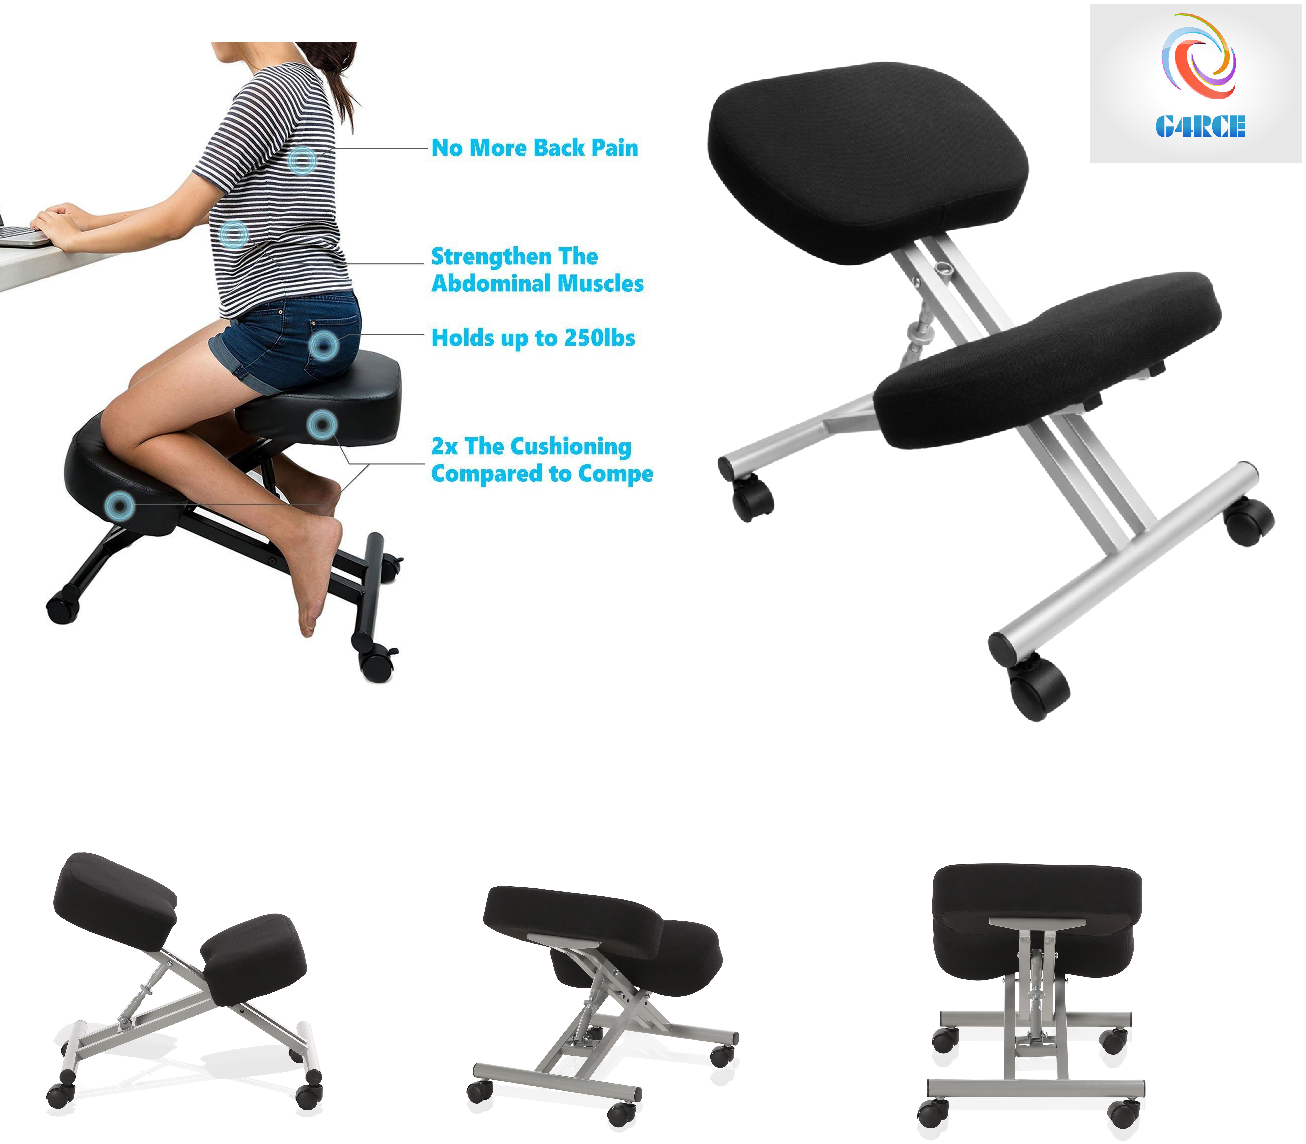 Ergonomic Orthopaedic Posture Steel Adjustable Kneeling Stool Chair